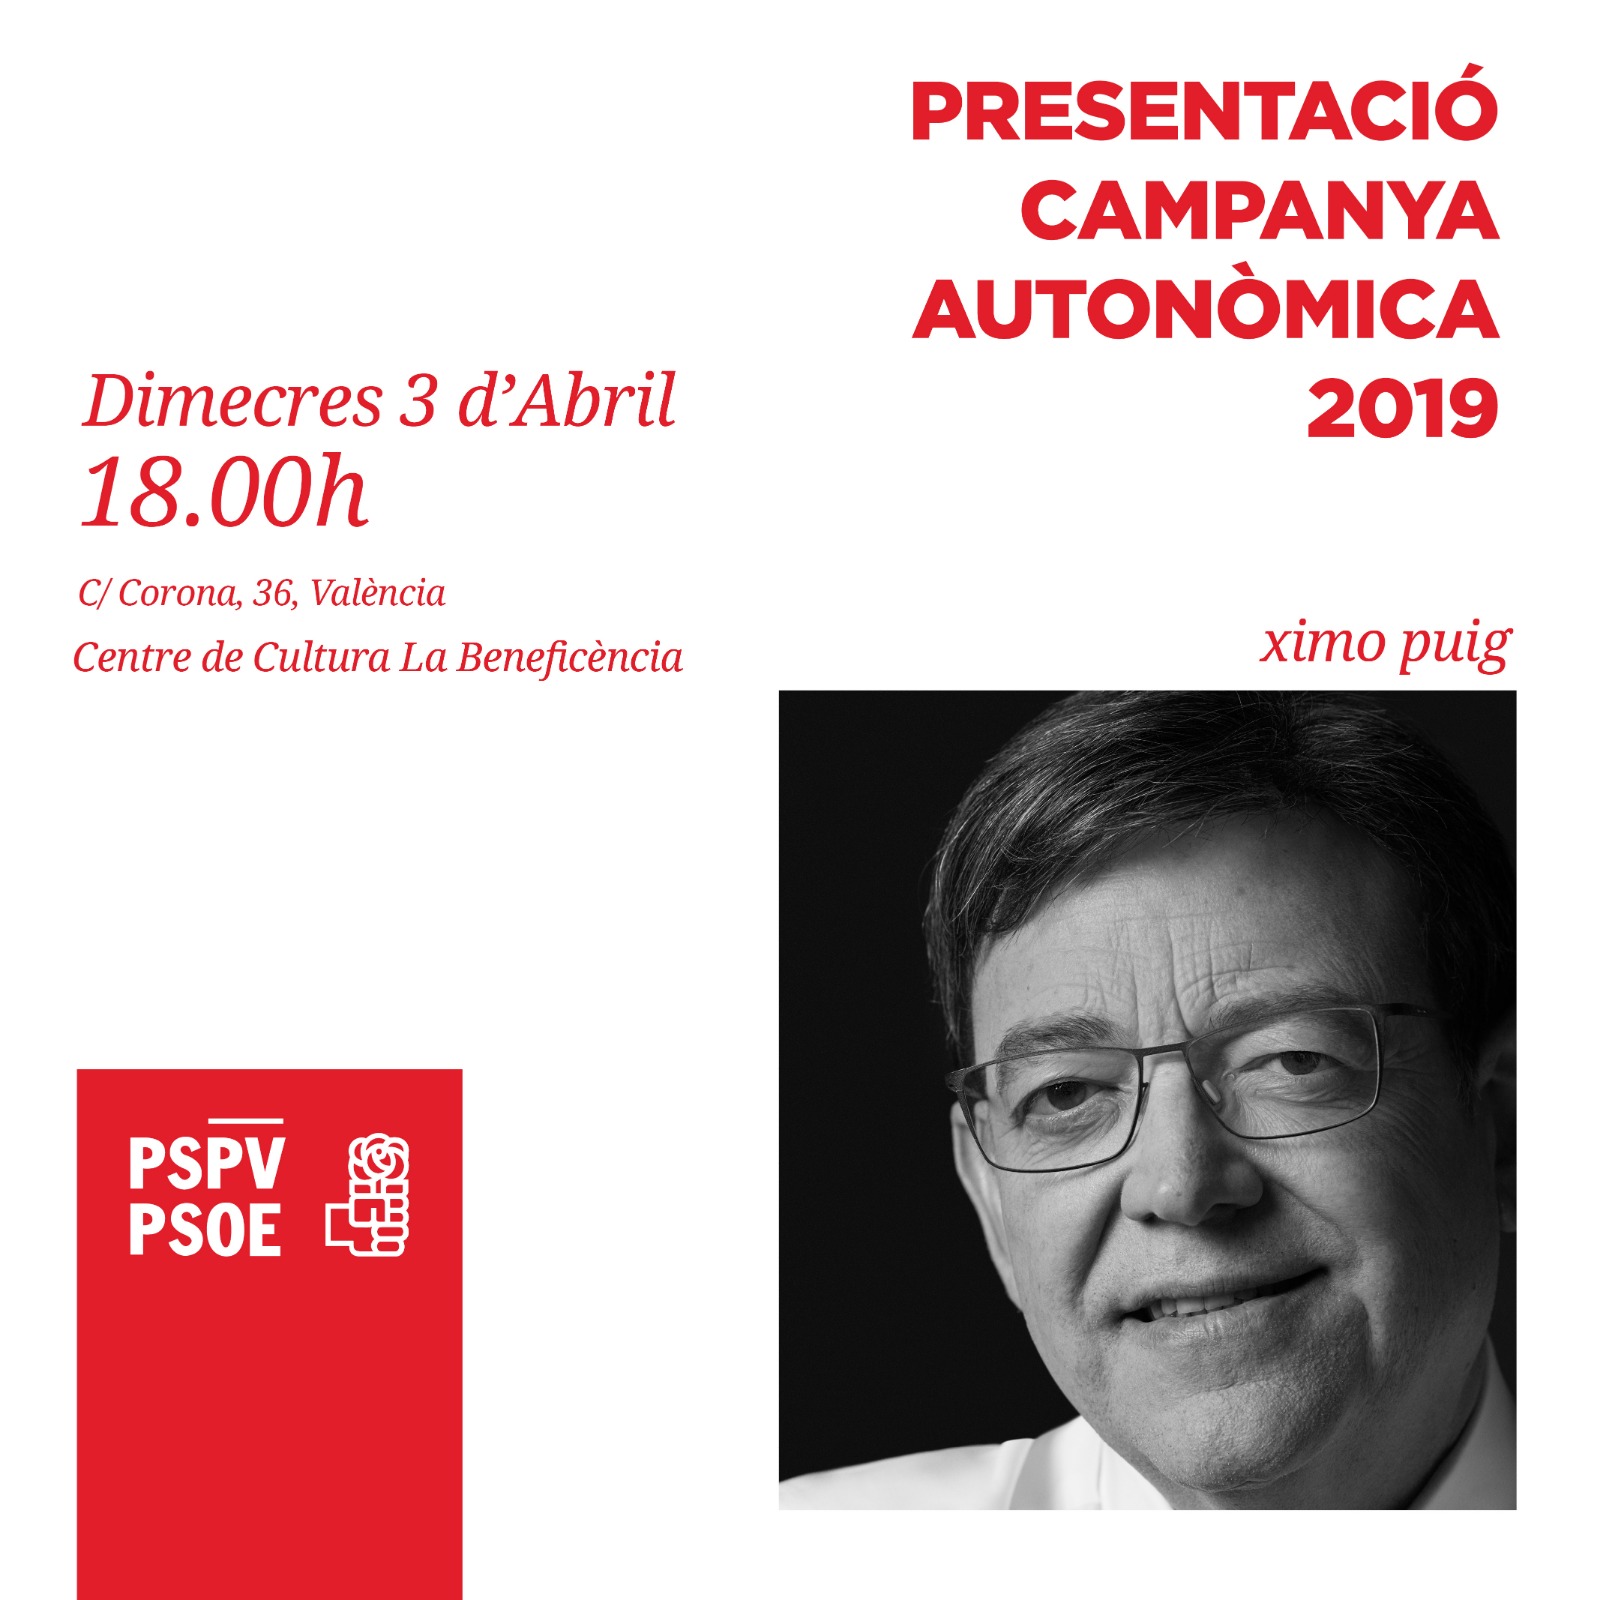 You are currently viewing Presentació de la campanya autonòmica 2019 del PSPV-PSOE